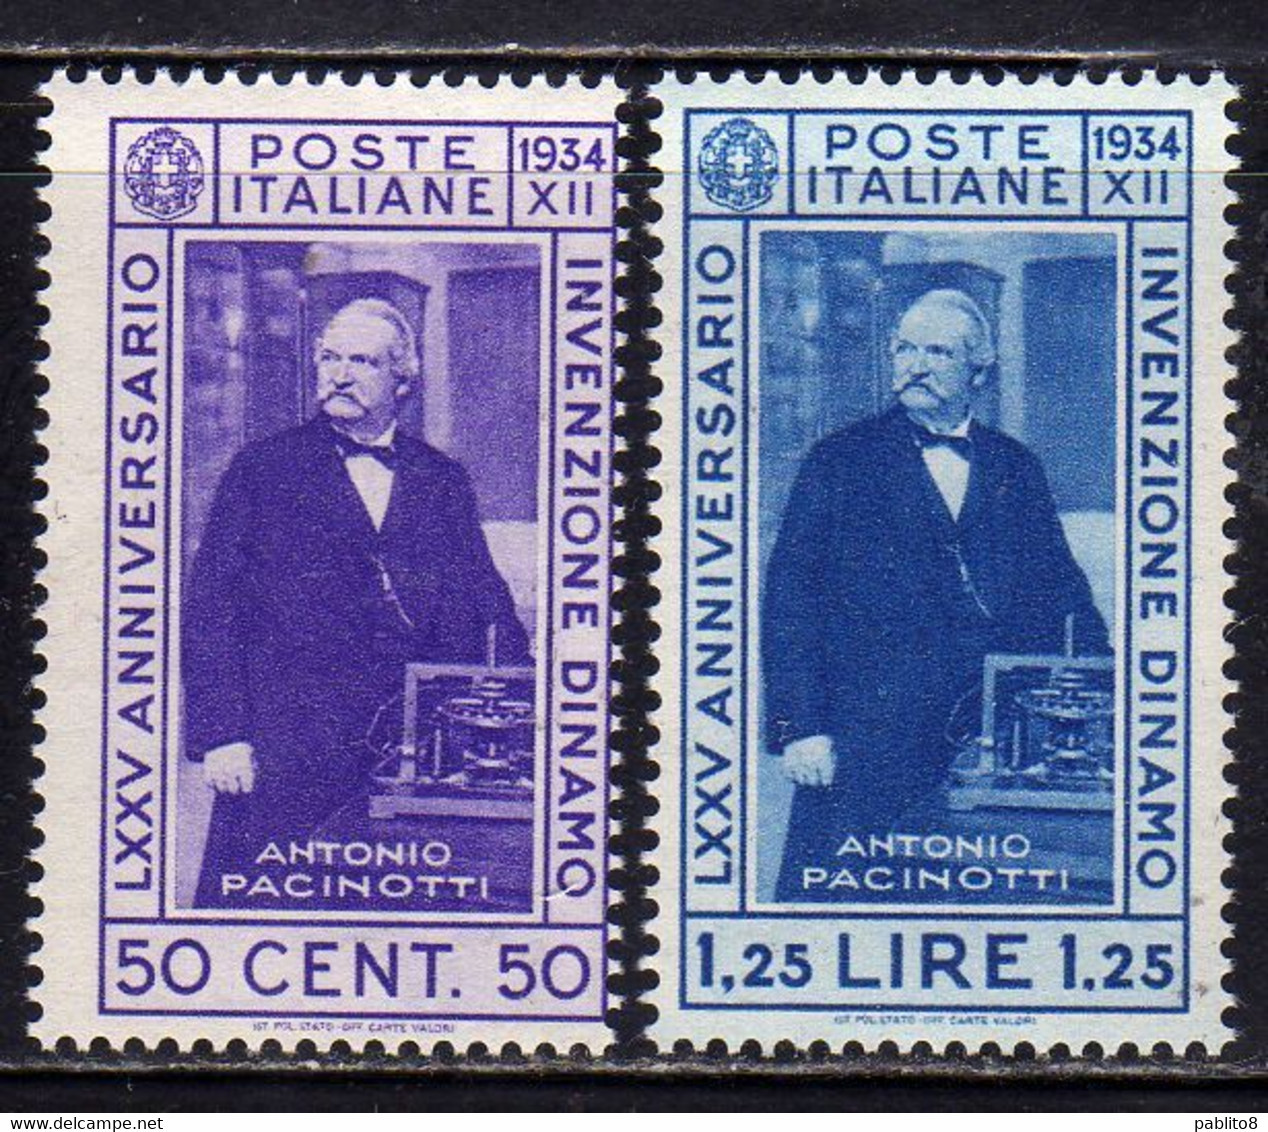 ITALIA REGNO ITALY KINGDOM 1934 INVENZIONE DELLA DINAMO PACINOTTI SERIE COMPLETA COMPLETE SET MNH - Ungebraucht